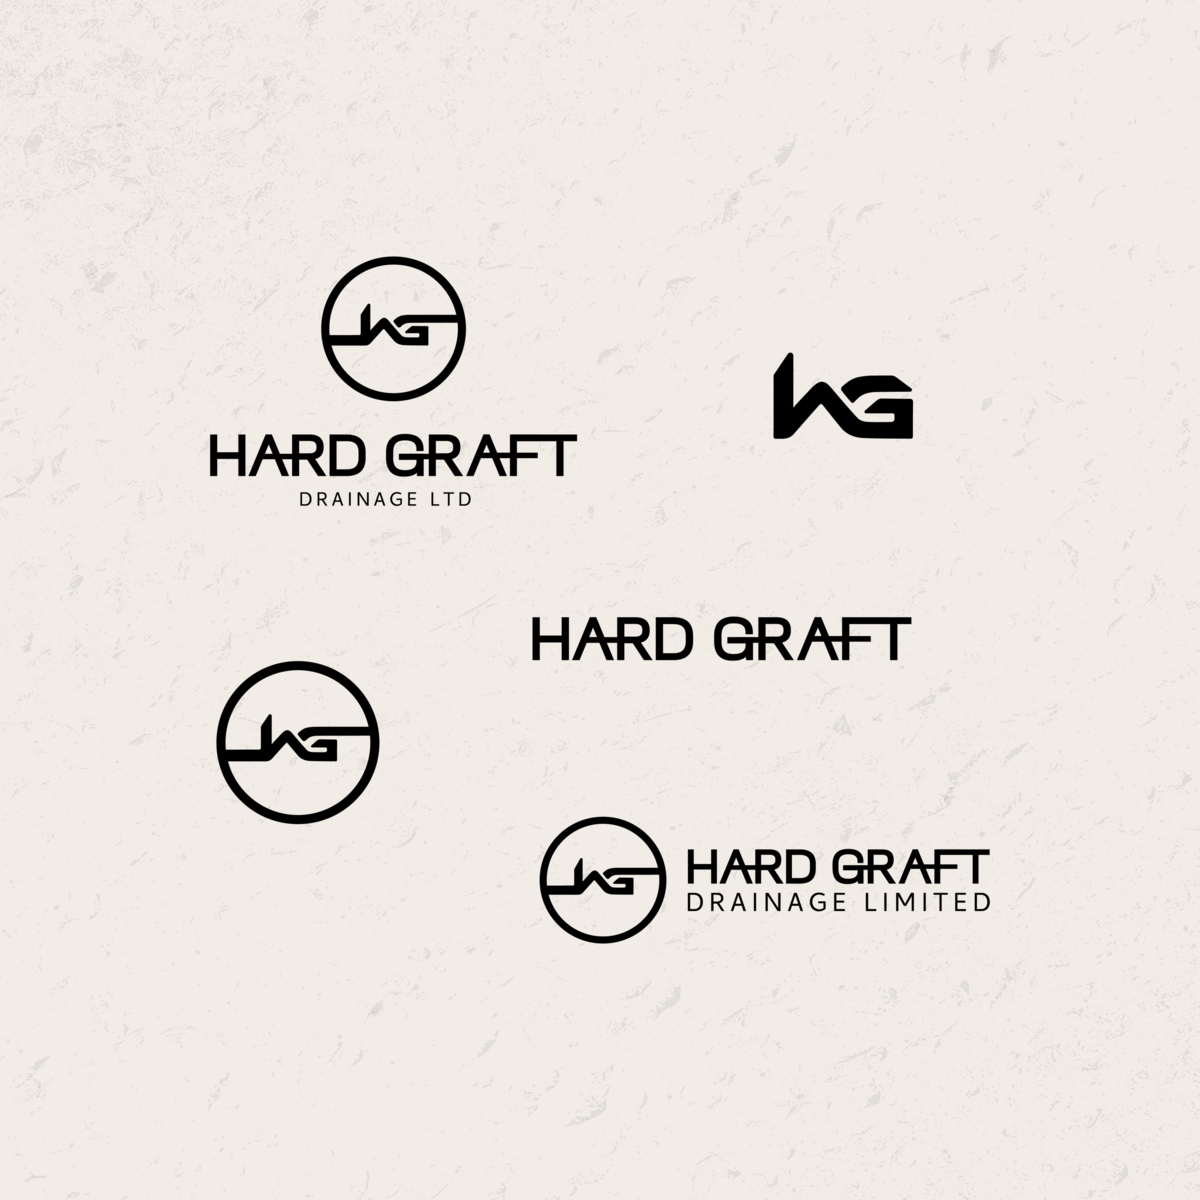 Hard Graft Drainage Logos